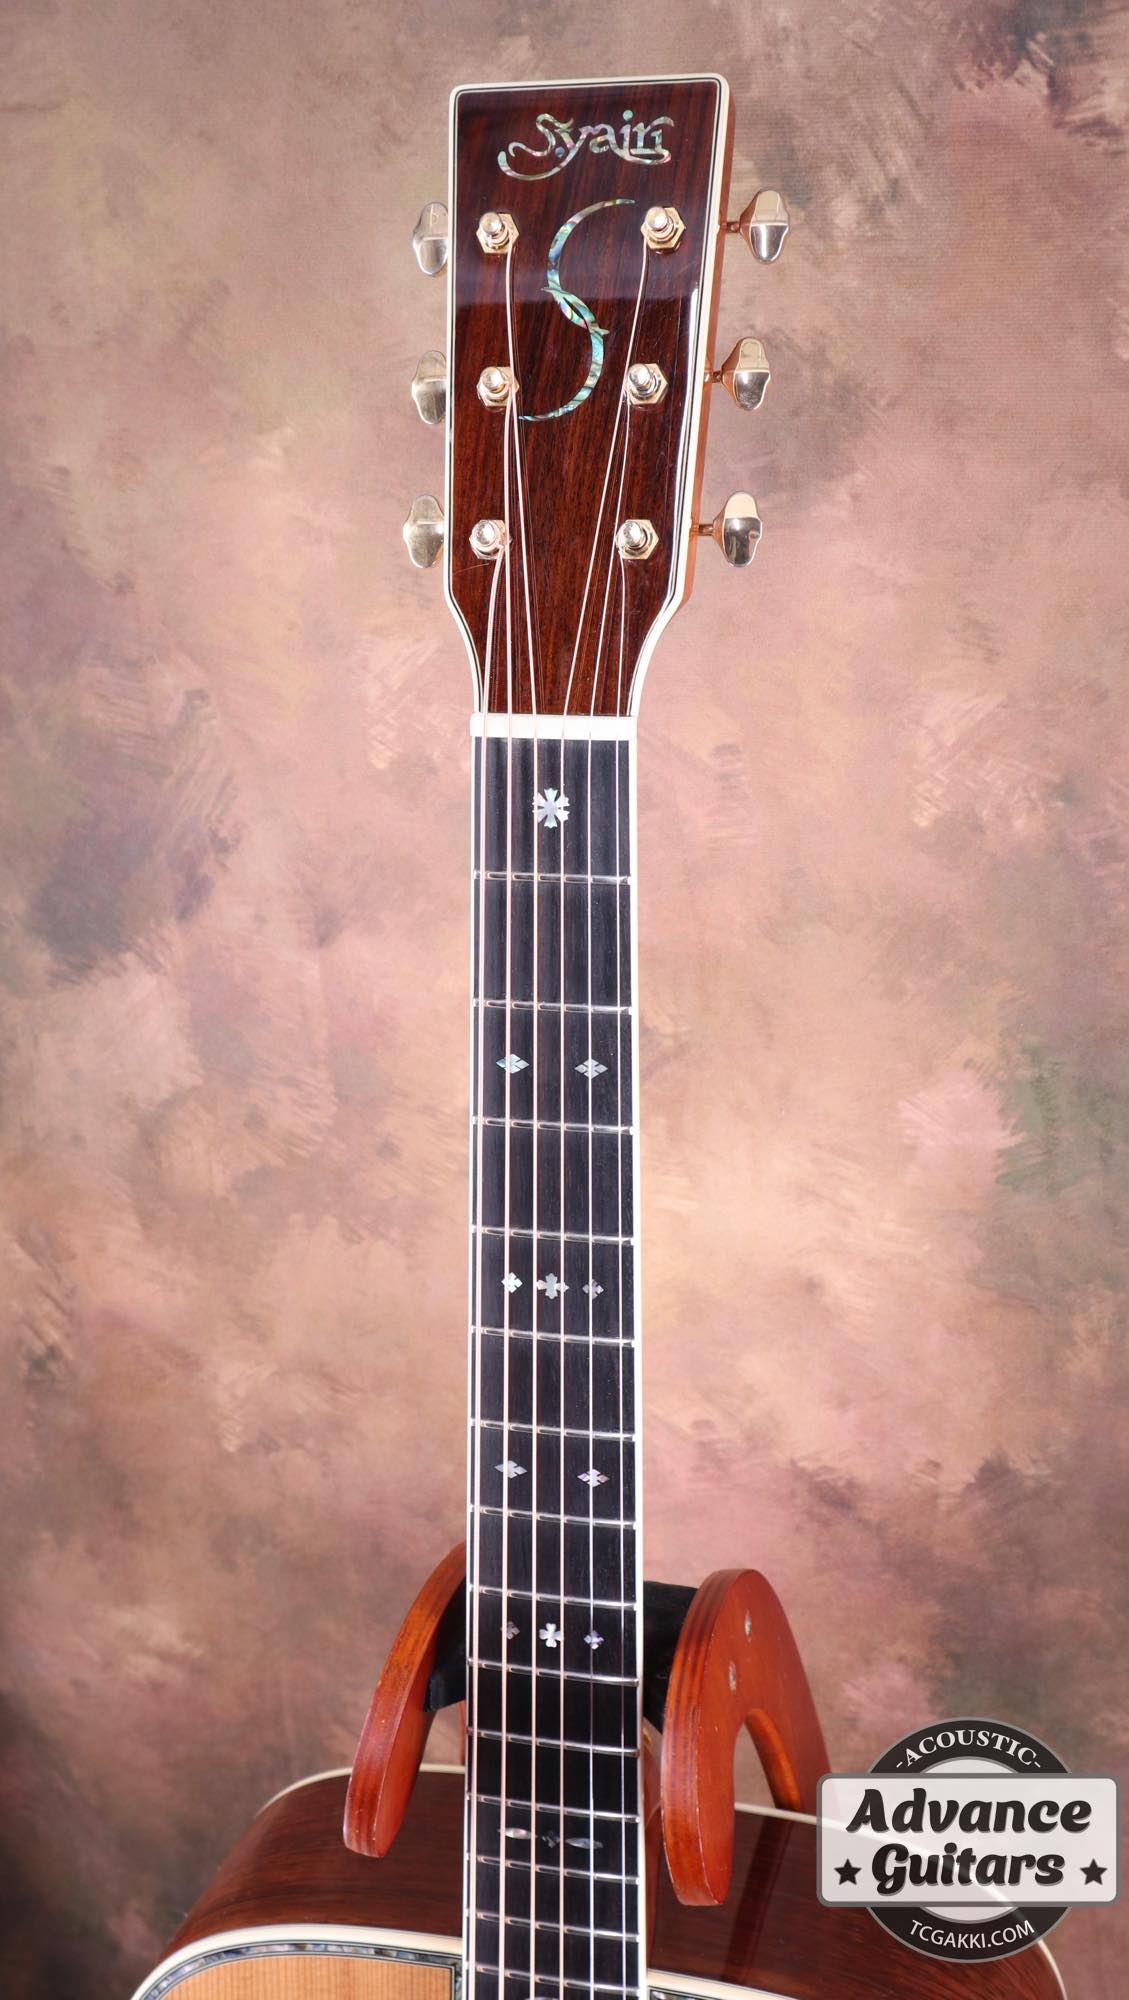 アコースティックギター S.yairi YD-42/N - アコースティックギター